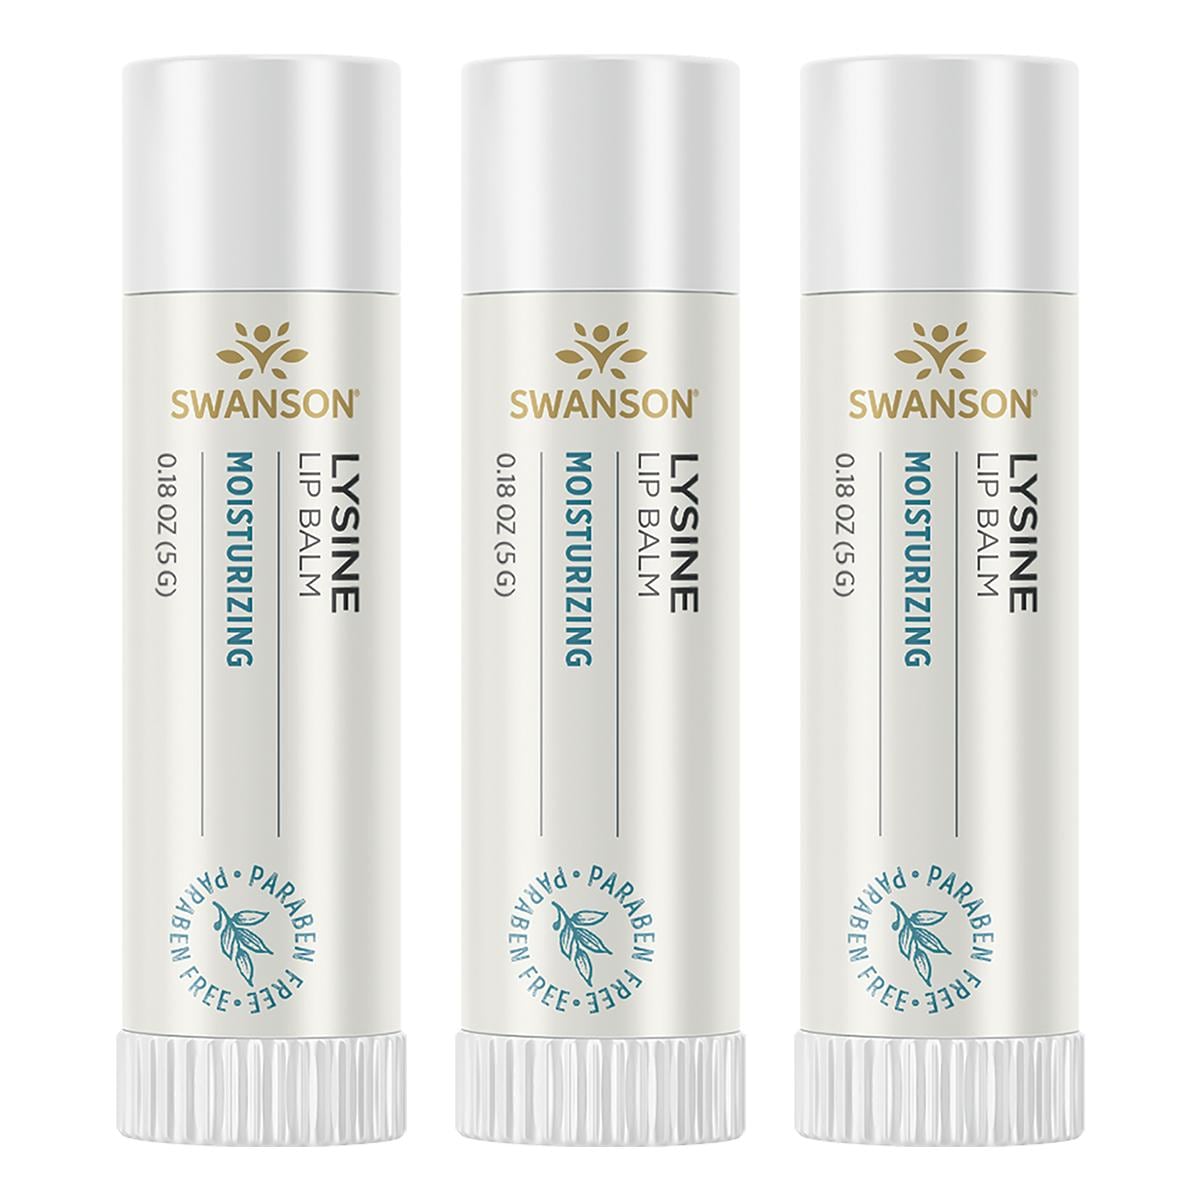 Swanson Premium Lysine Lip Balm 3 Pack 0.18 oz Balm